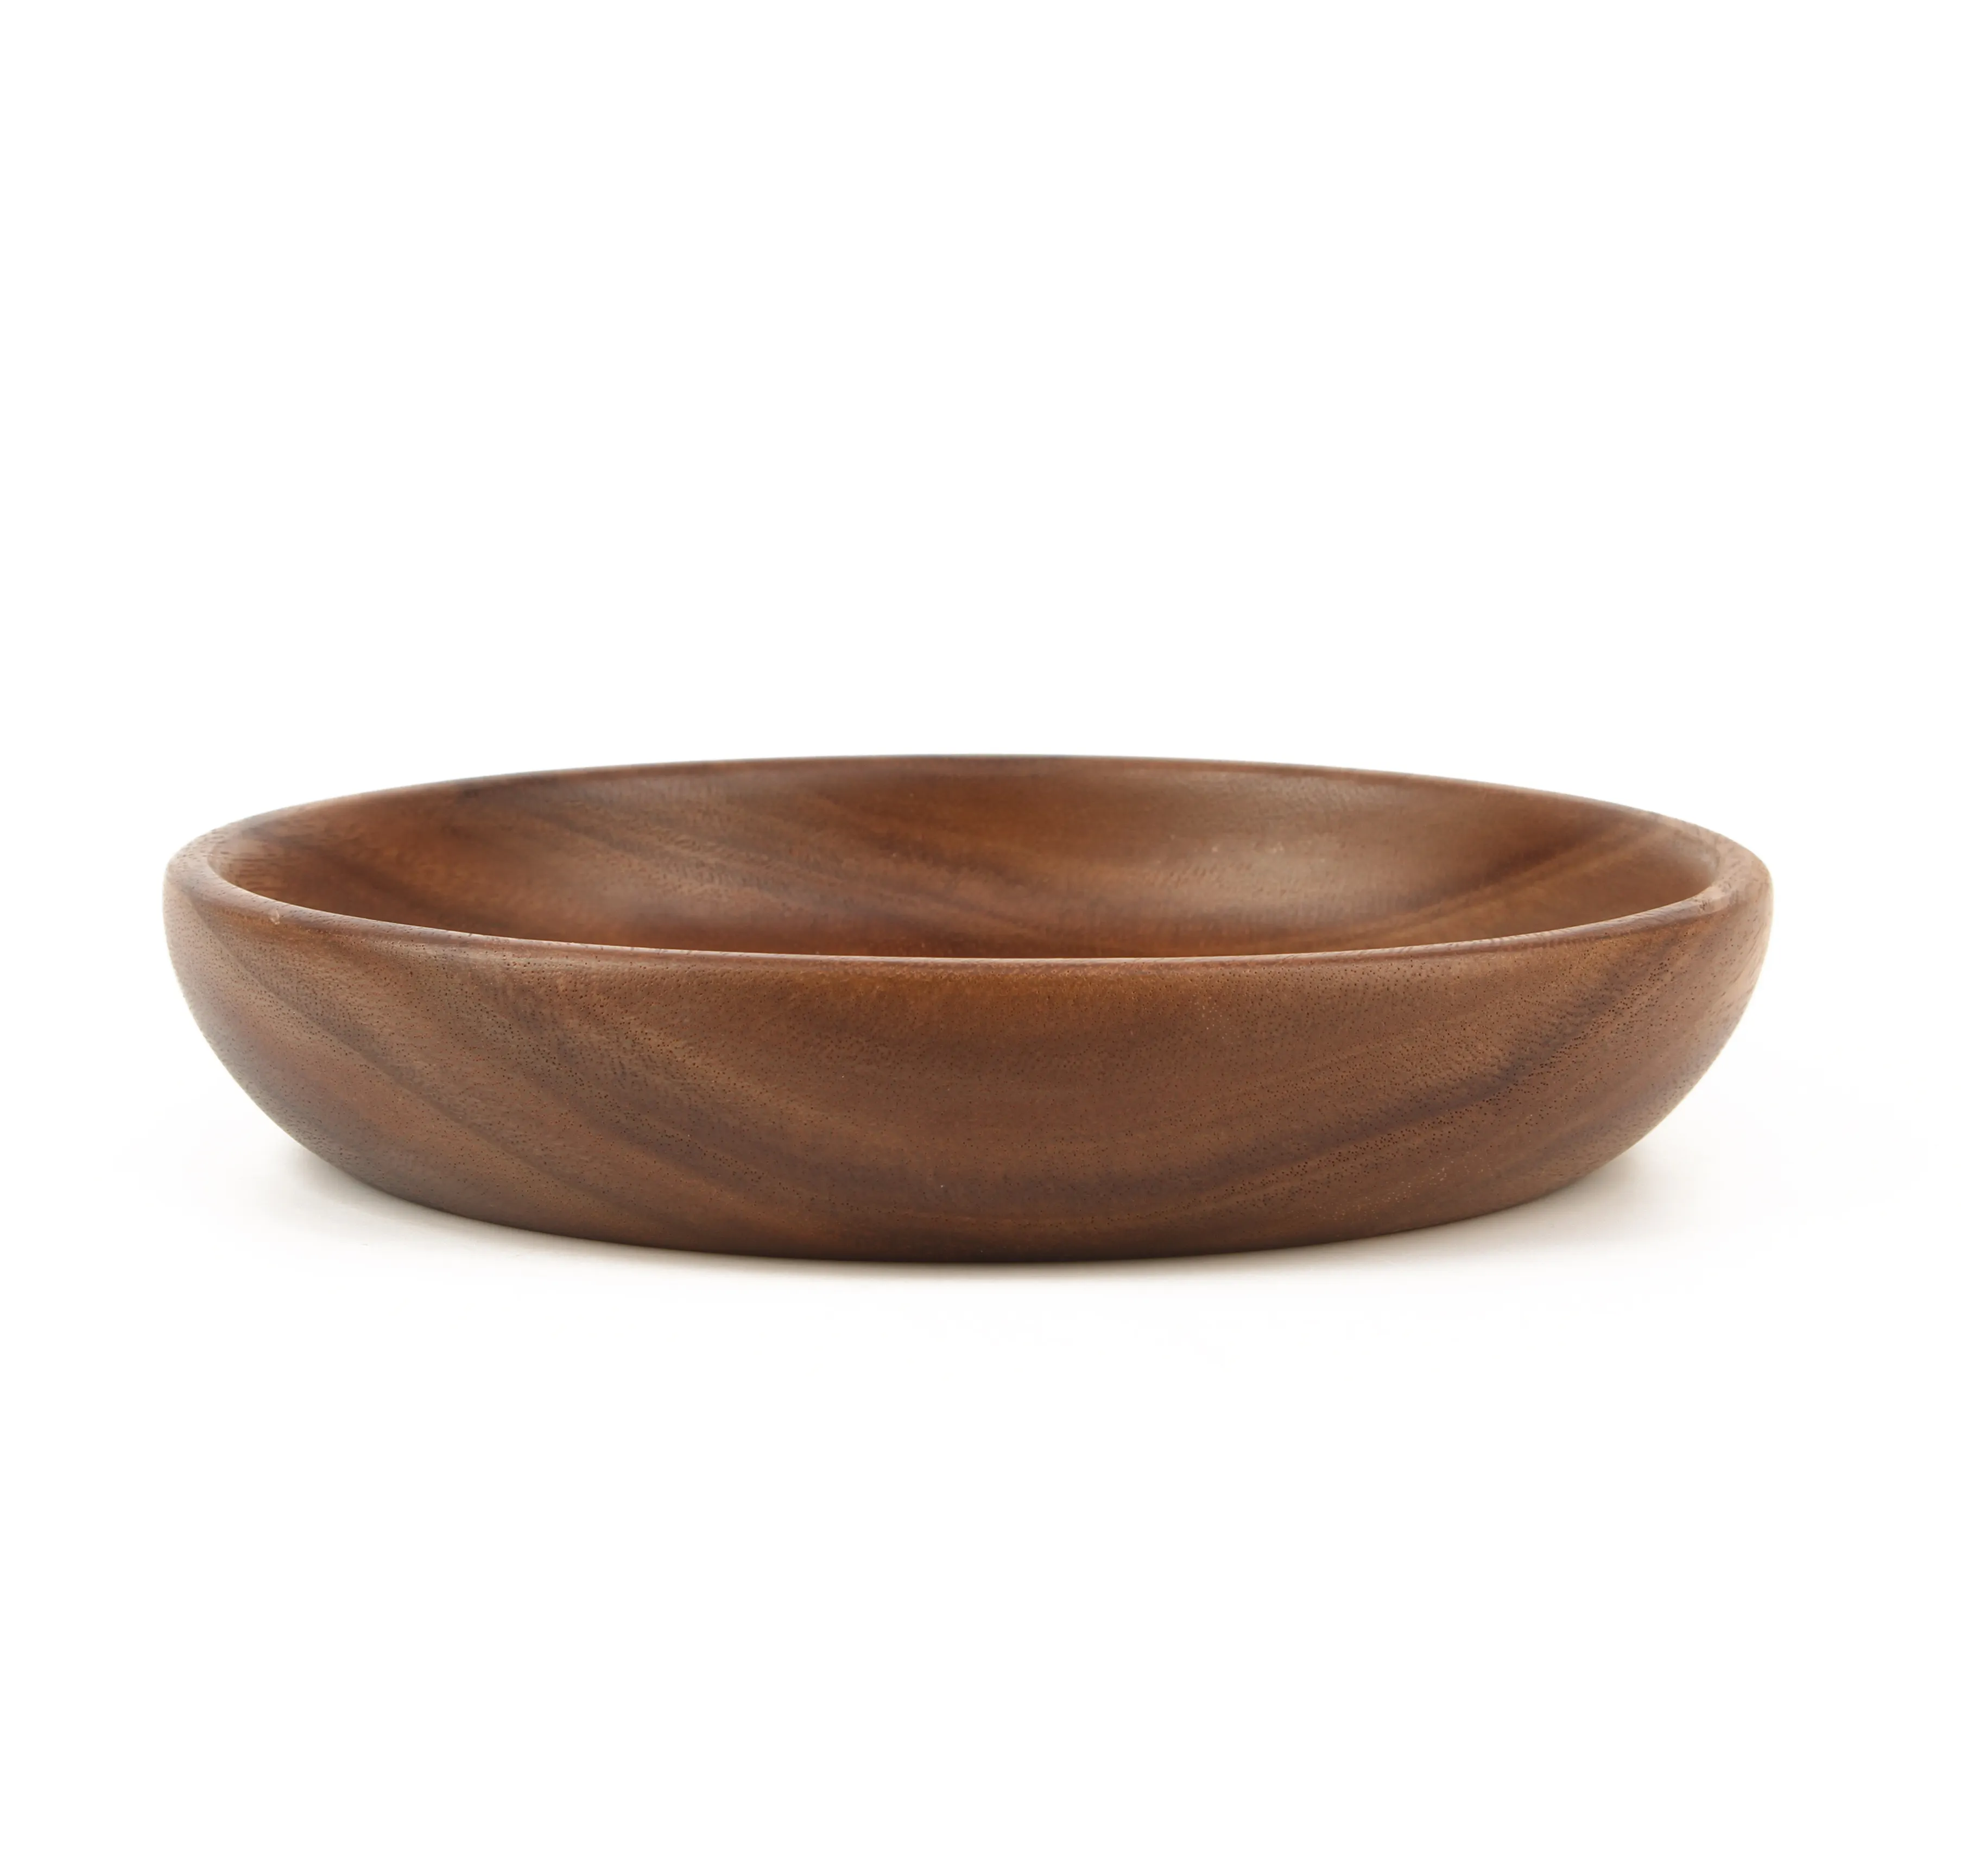 Natürliche Akazien-Holz schalen Hand geschnitzte Kalebasse Dip Tray Bowl S/4 Ideal für Vorspeisen, Dips, Sauce, Nüsse, Süßigkeiten, Oliven, Samen